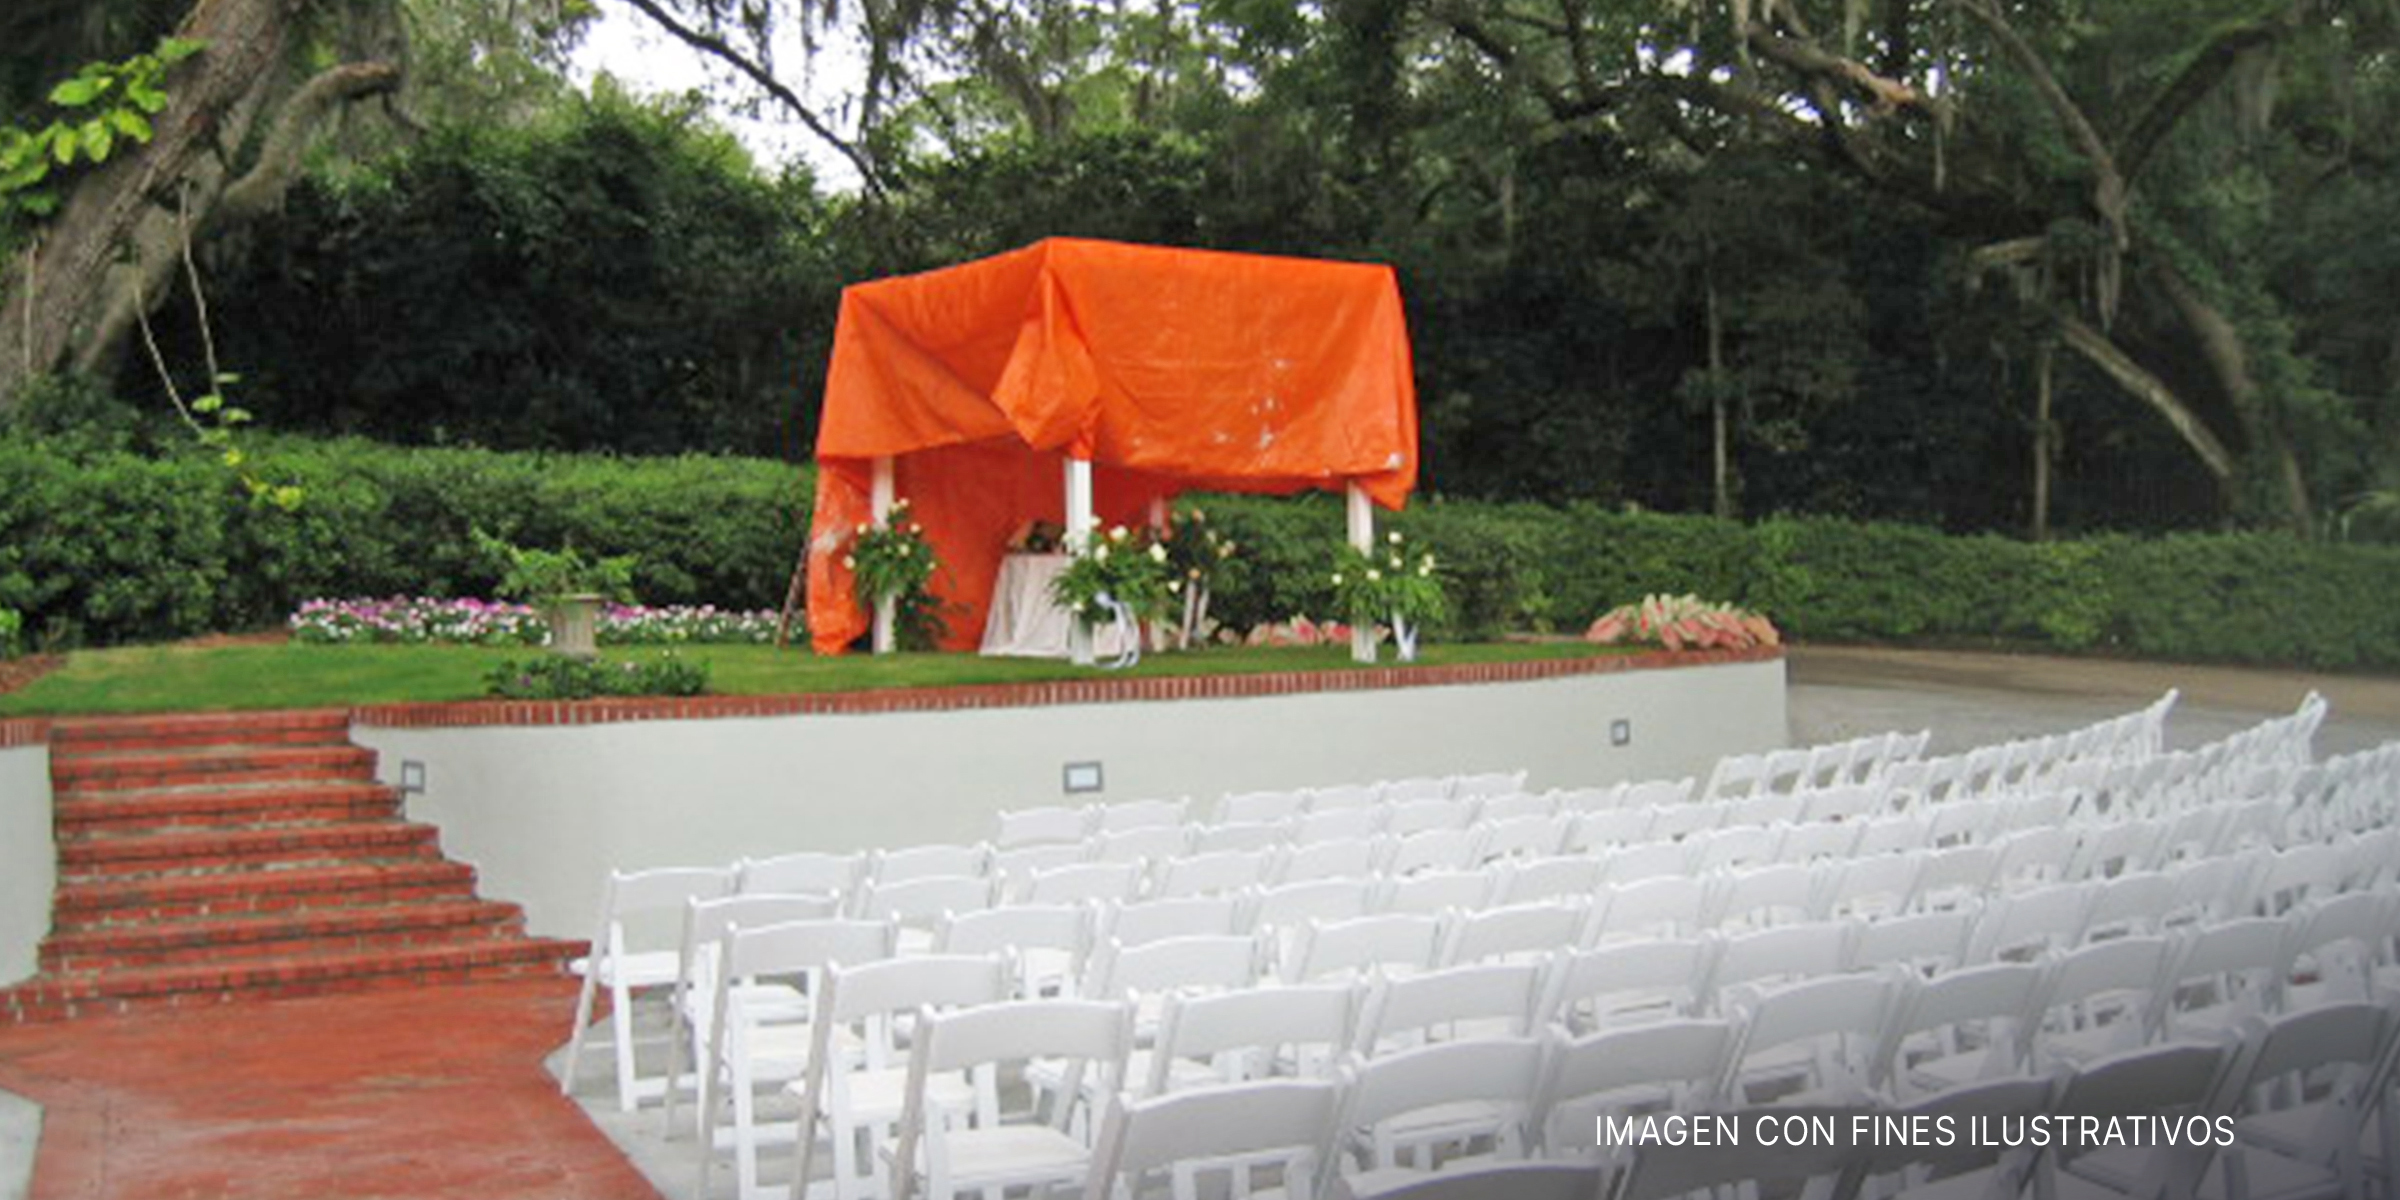 Lugar de boda vacío | Foto: Flickr.com/Richard Berg (CC BY 2.0)